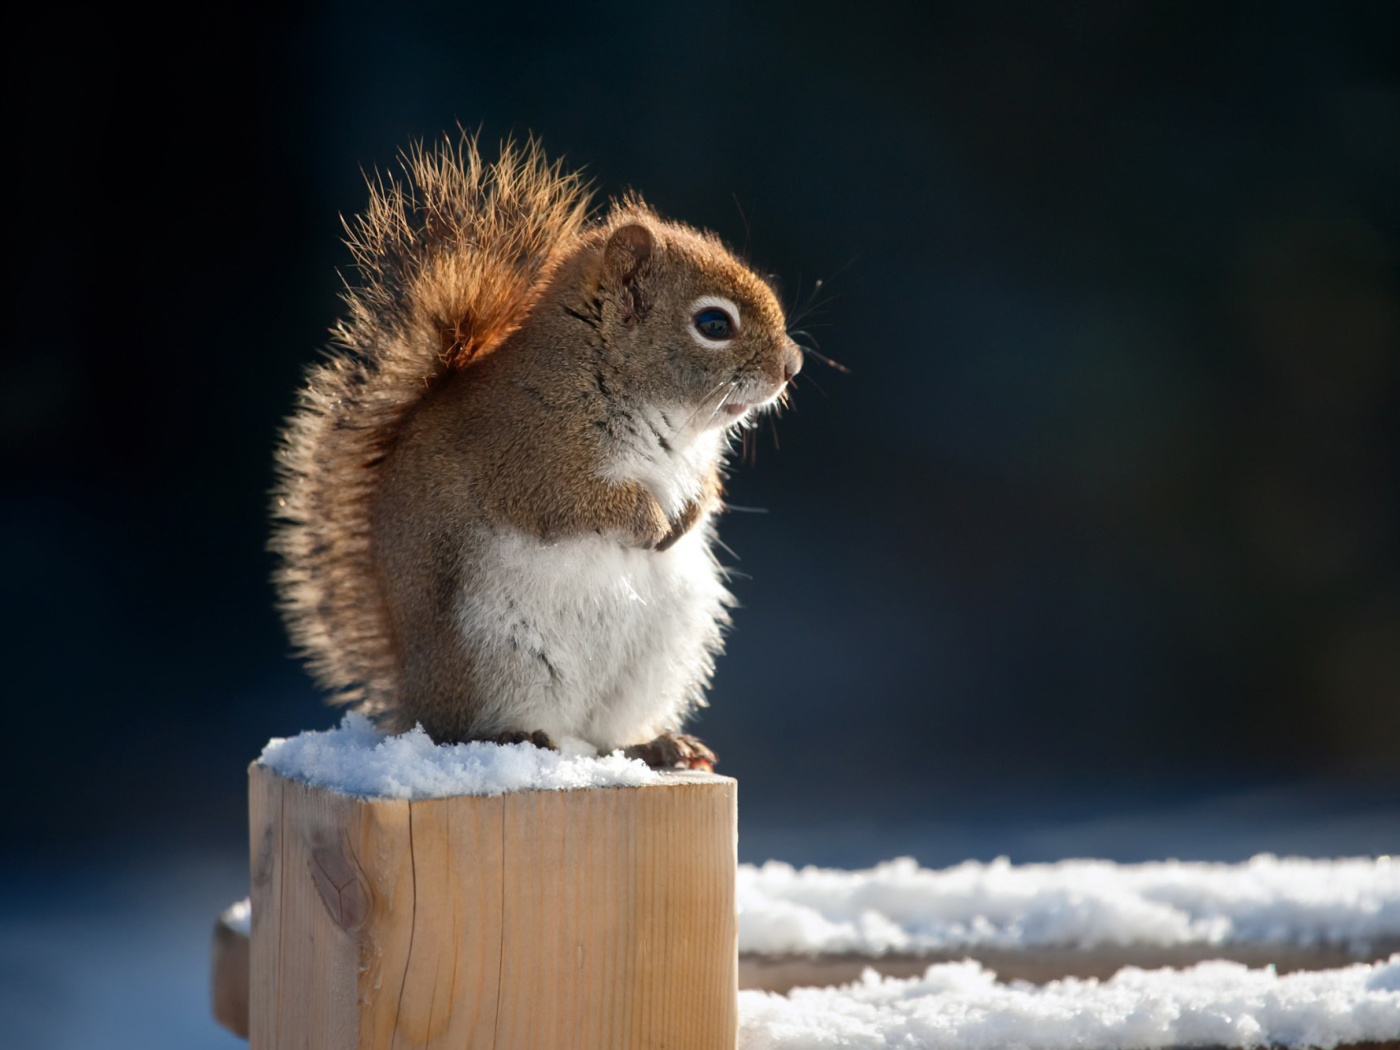 Cute squirrel in winter screenshot #1 1400x1050